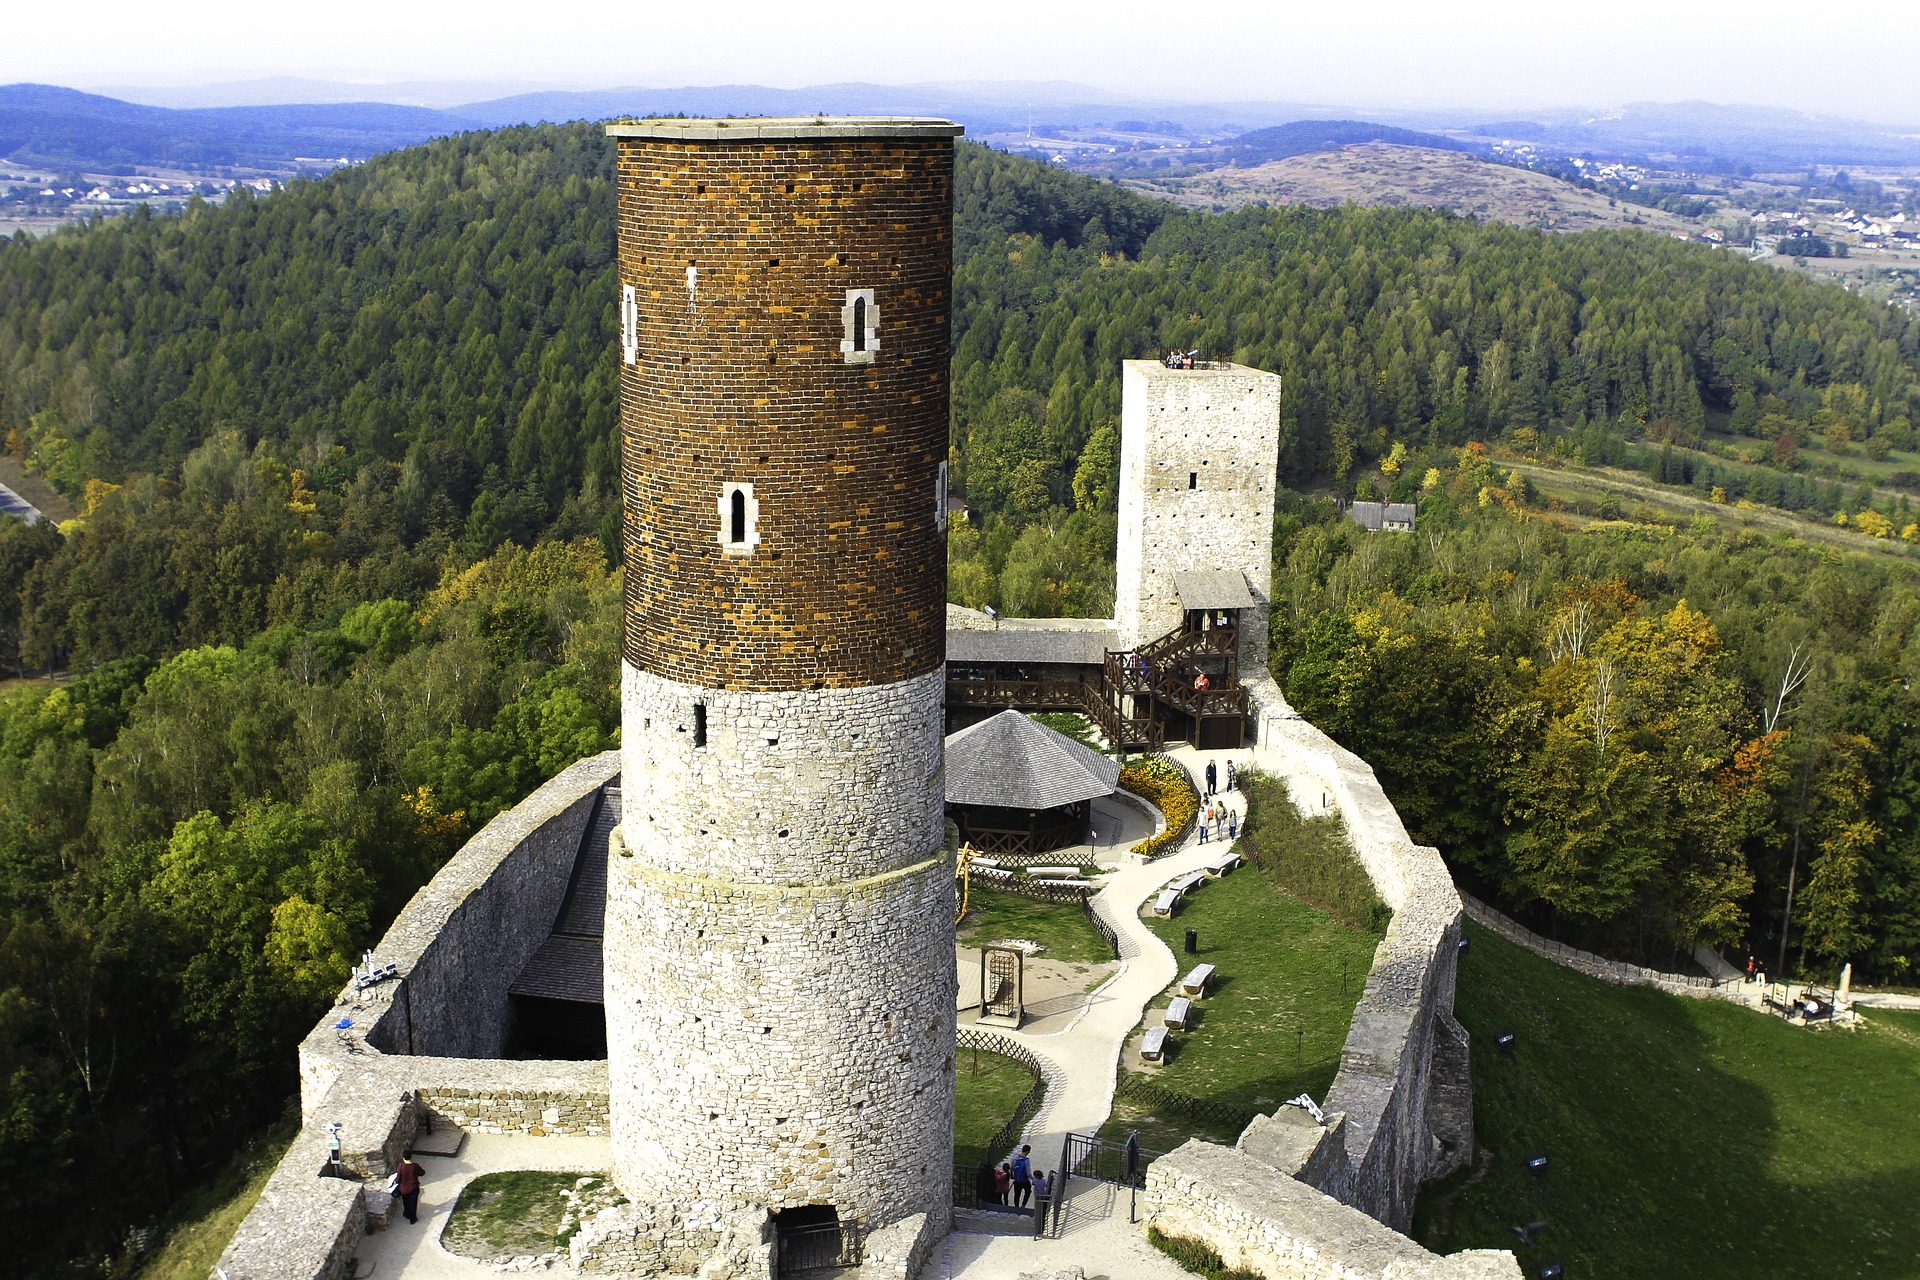 Zamek Królewski w Chęcinach w miejscowości Chęciny